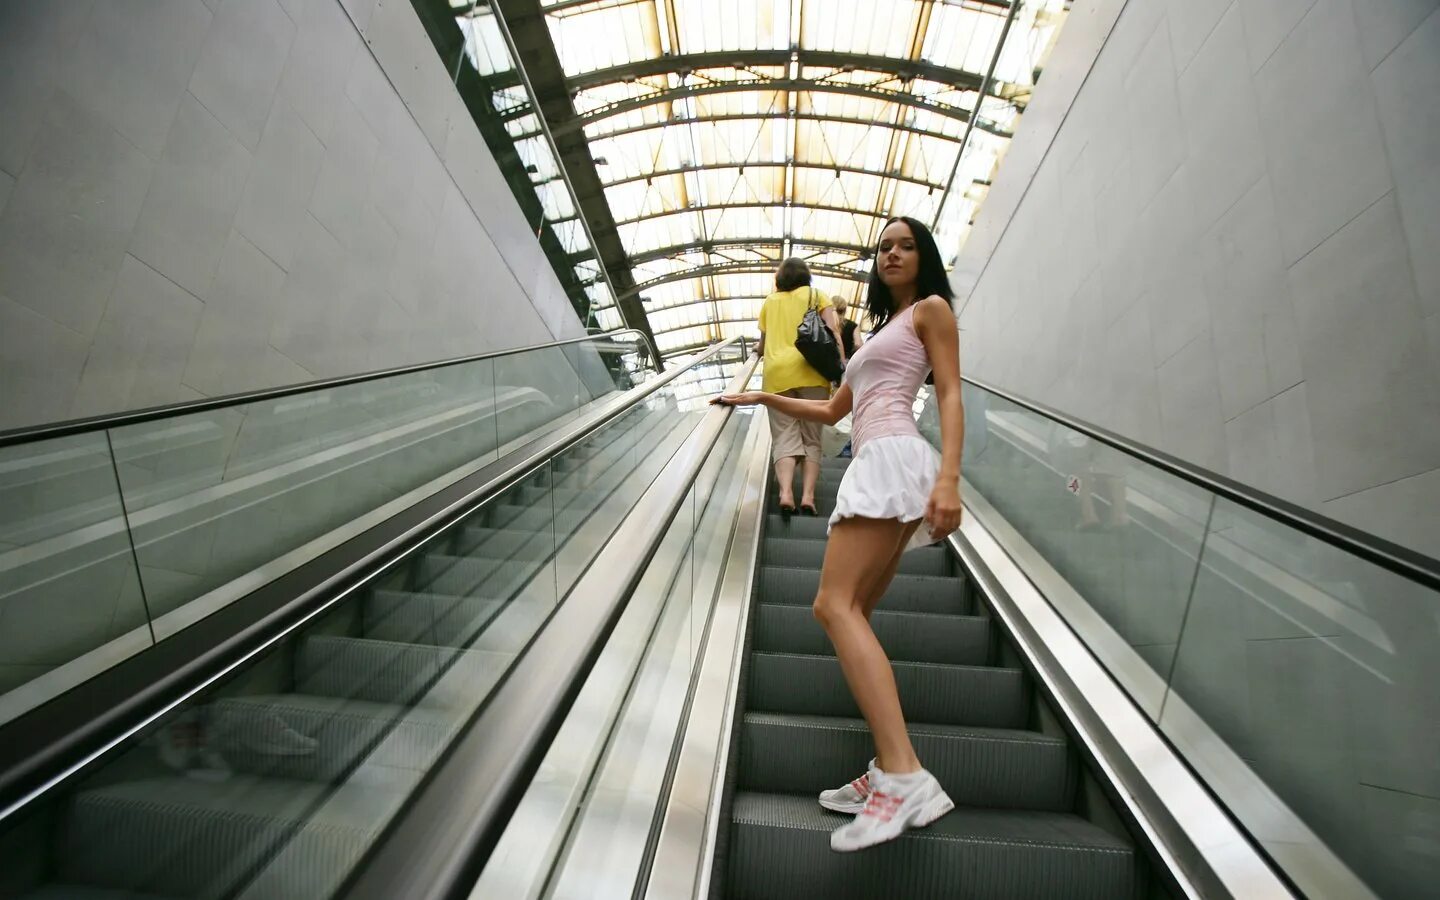 Снизу ходят. Патрик Личфилд девушка на эскалаторе. Девушка наиэскалаторе. Девушки в метро. Фотосессия на лестнице.